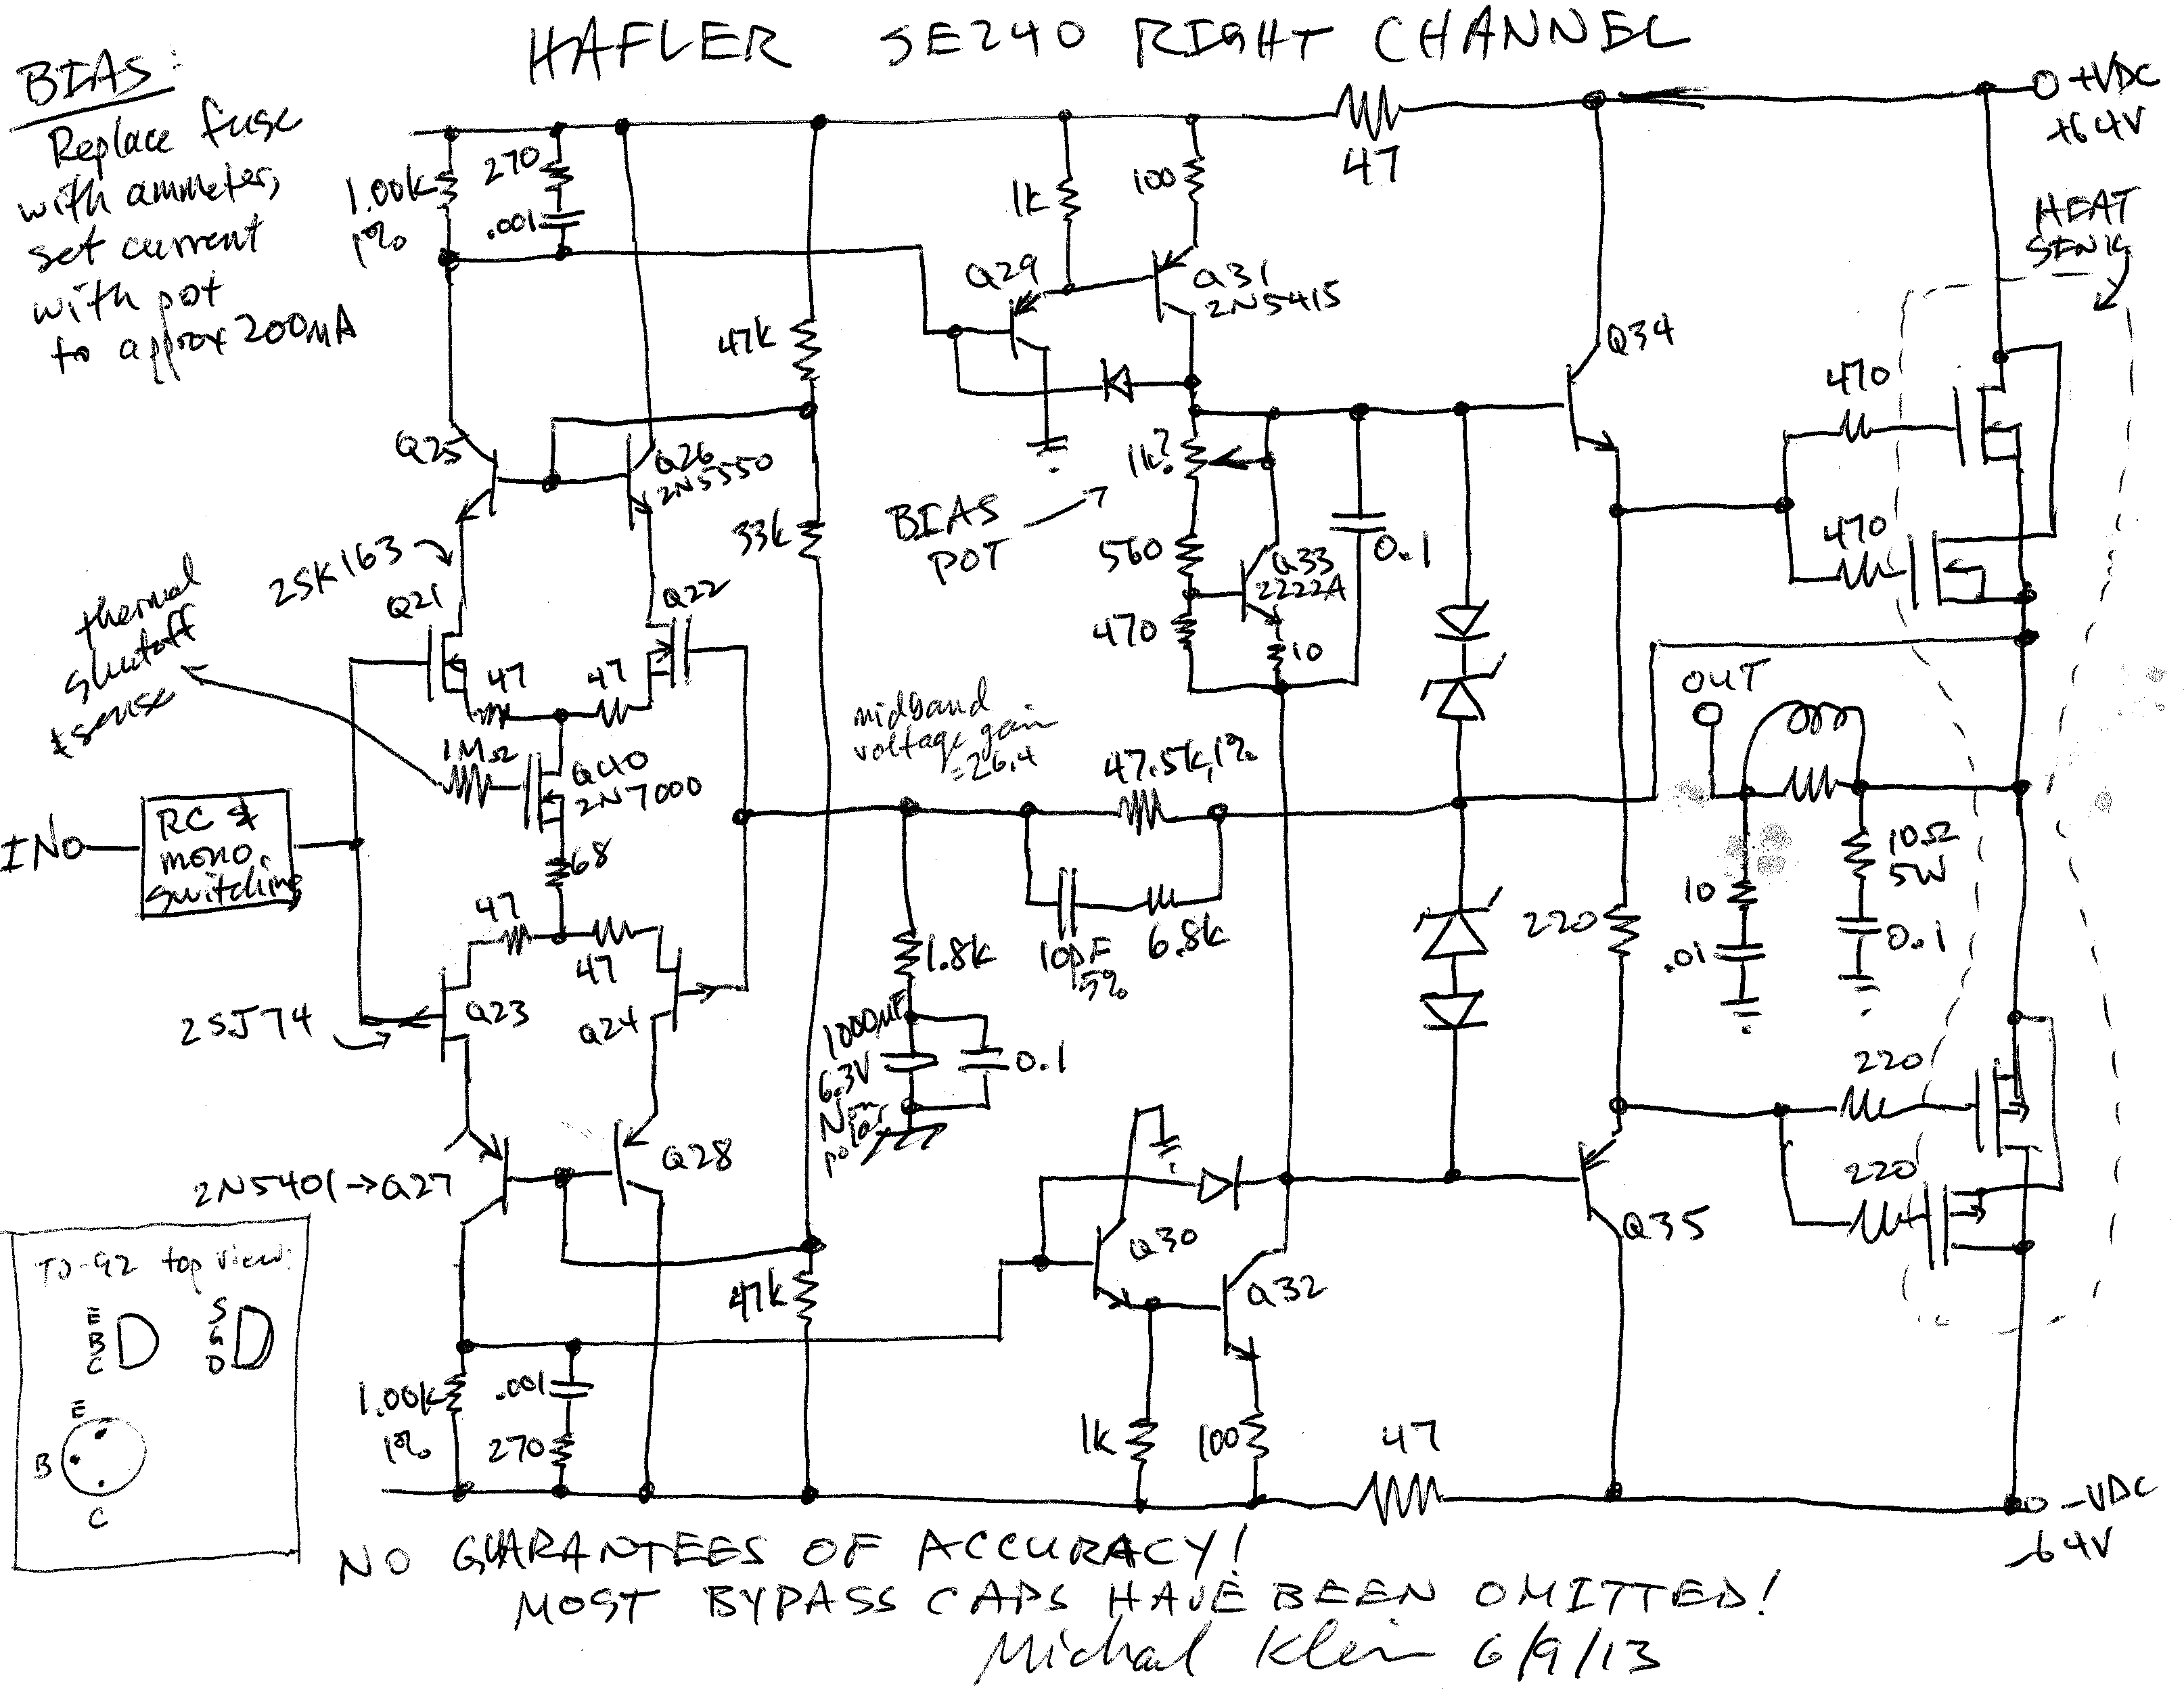 Hafler SE240 Power Amplifier Schematic DiagramRandomness